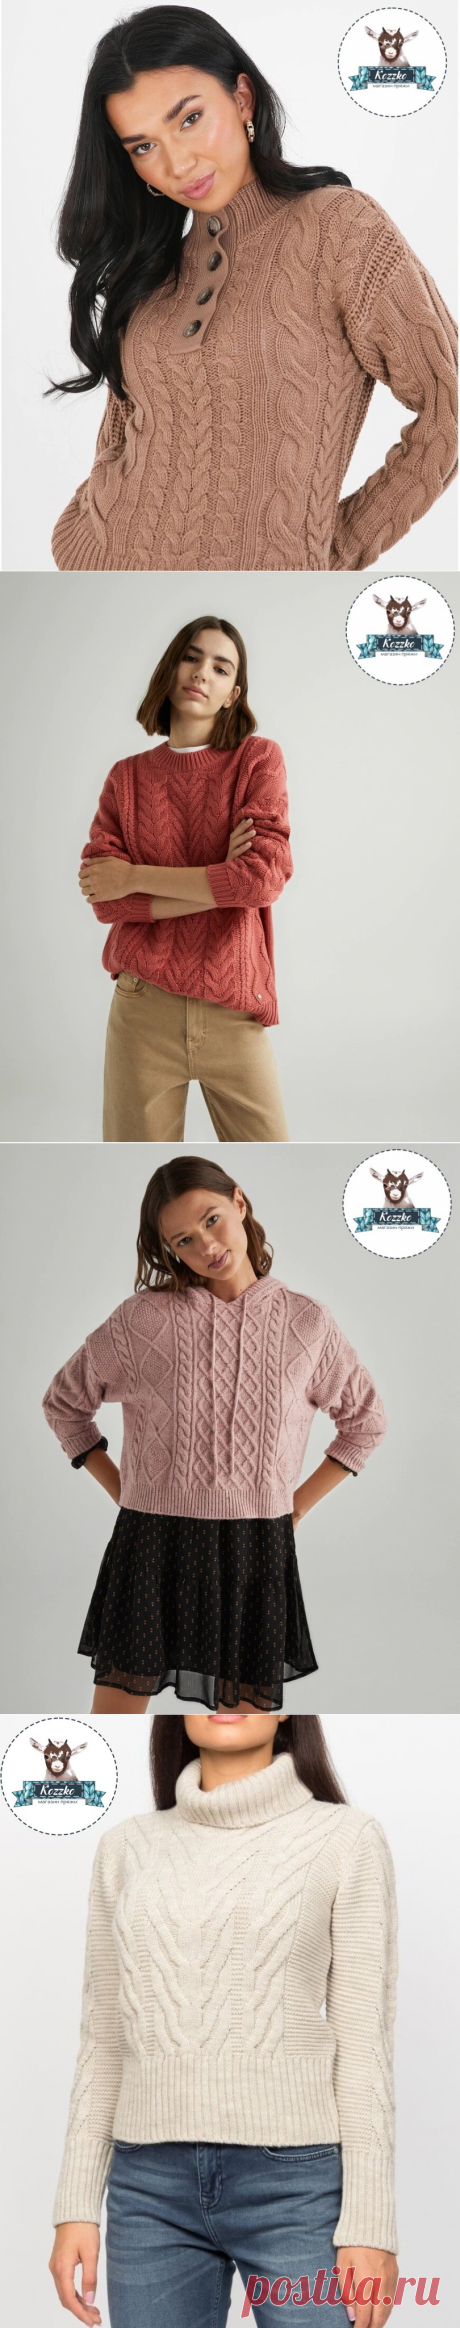 Мозговой штурм: выбираем, что связать на зиму. 22 брендовых свитера со схемами | Вязание спицами LenkomKnit | Дзен